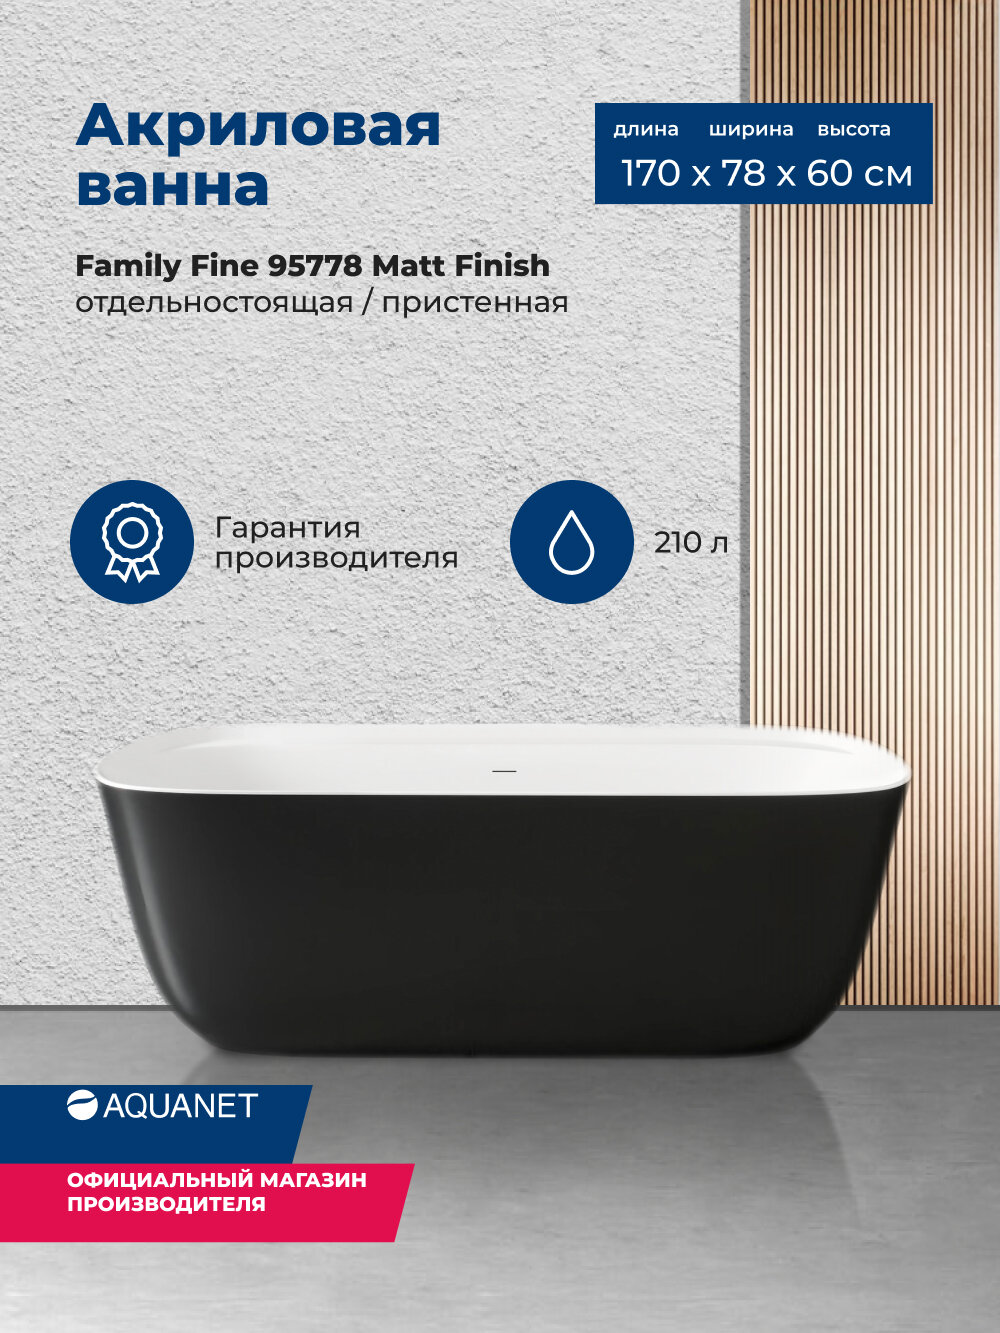 Акриловая ванна Aquanet Family Fine 170x78 95778 Matt Finish (панель Black matte)